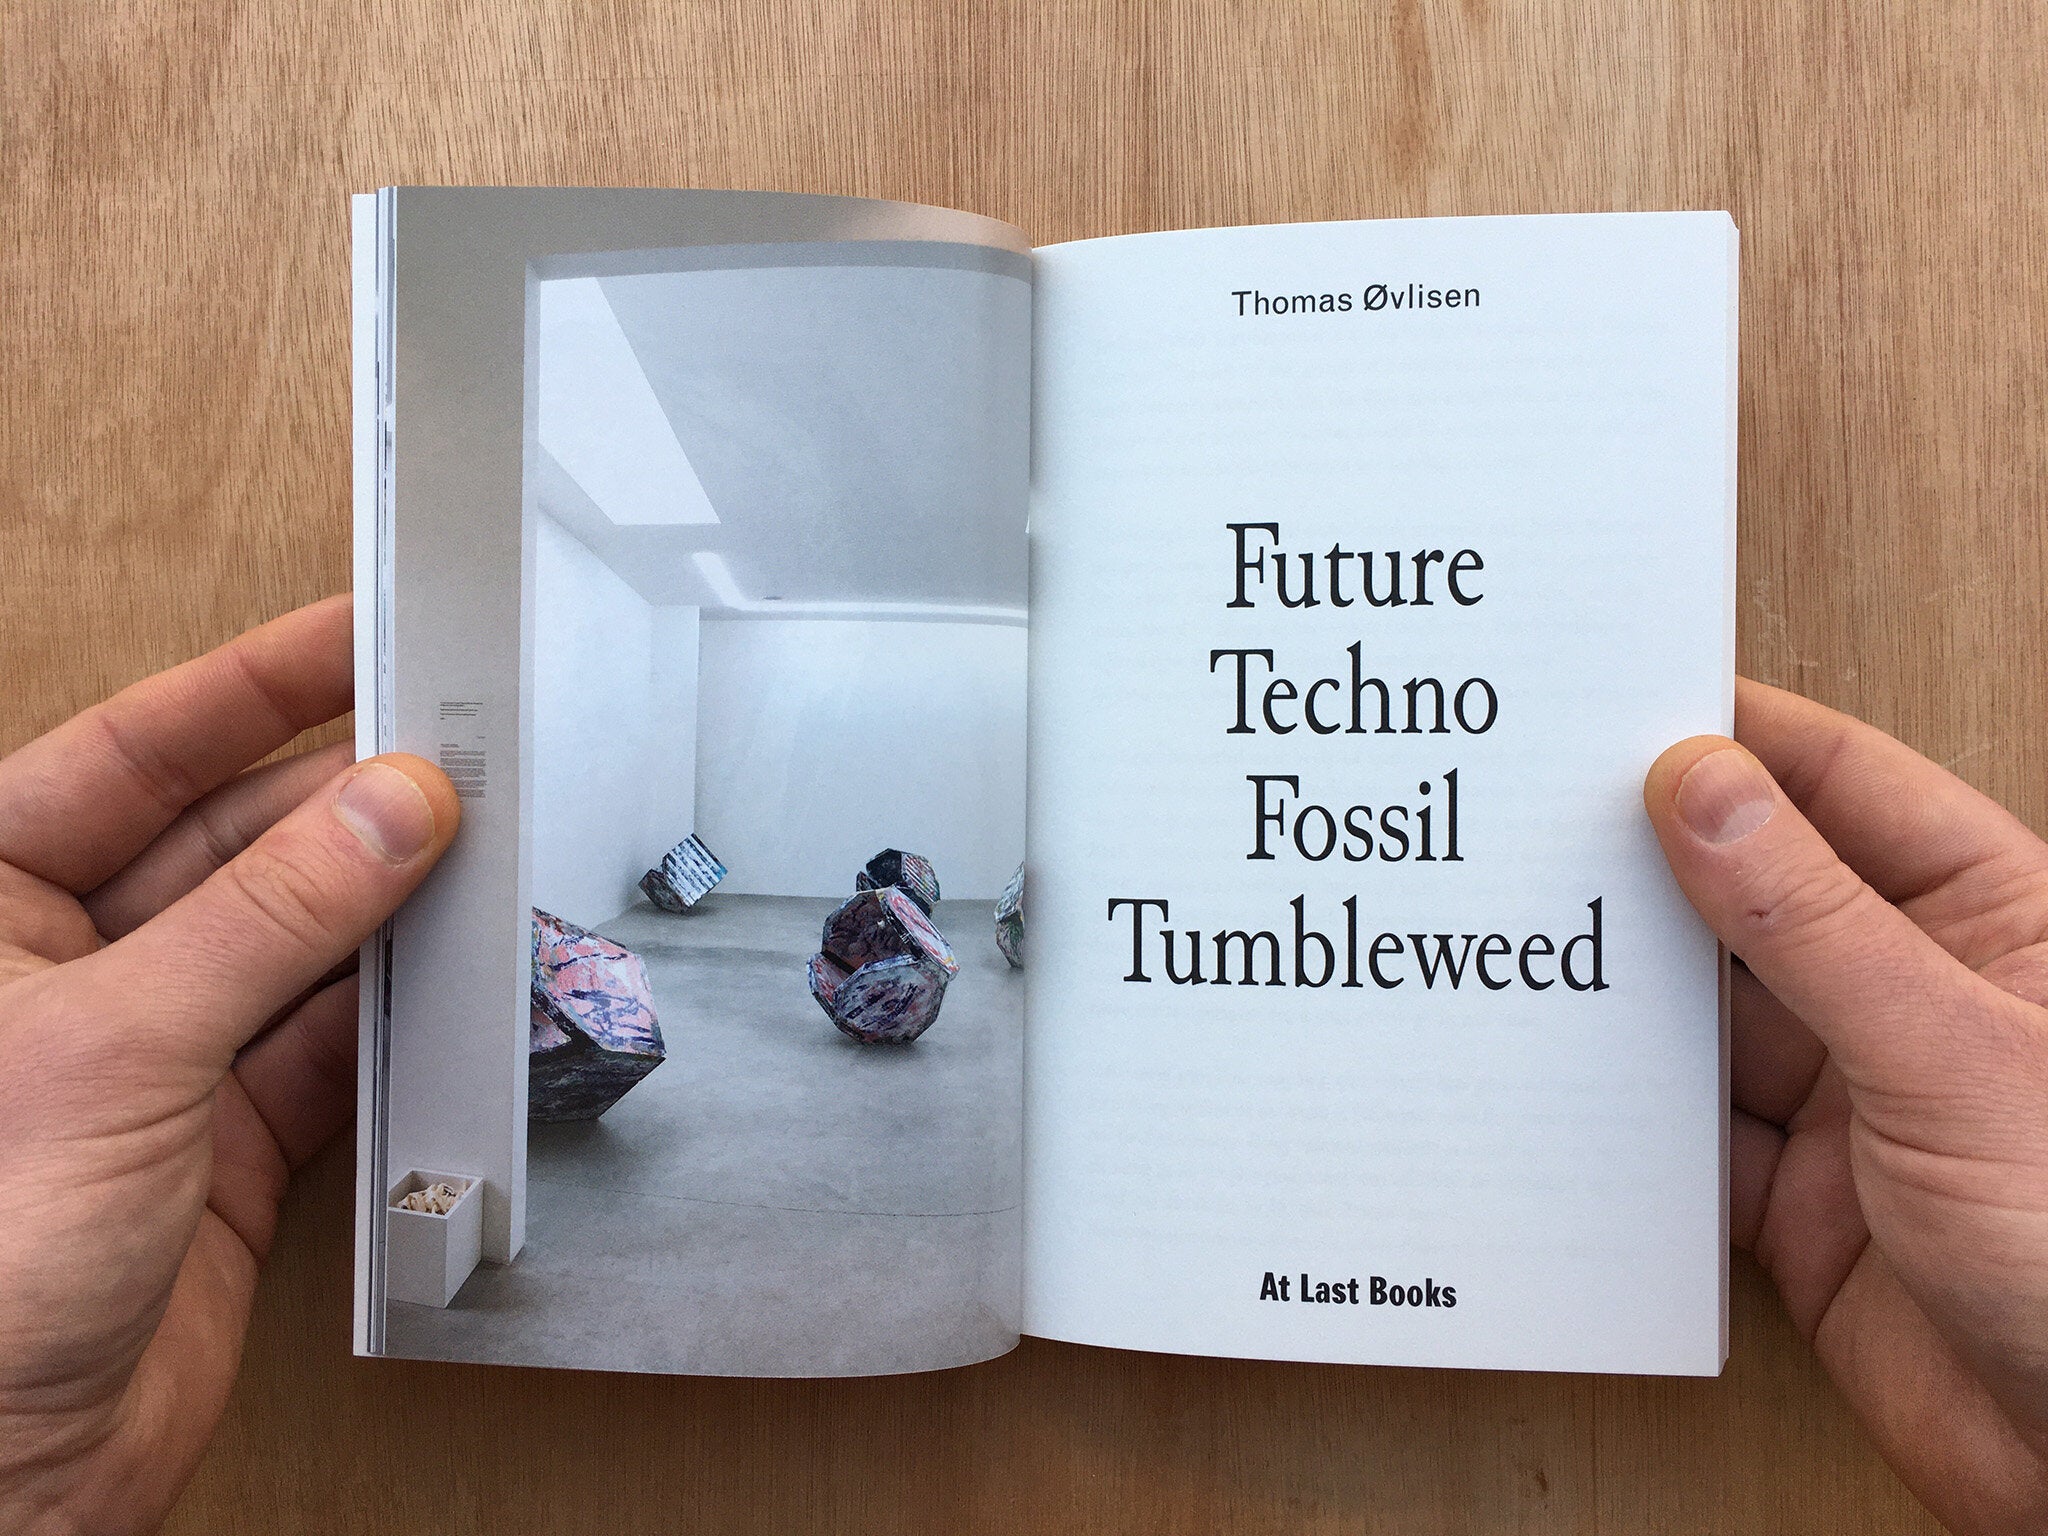 FUTURE TECHNO FOSSIL TUMBLEWEED by Thomas Øvlisen